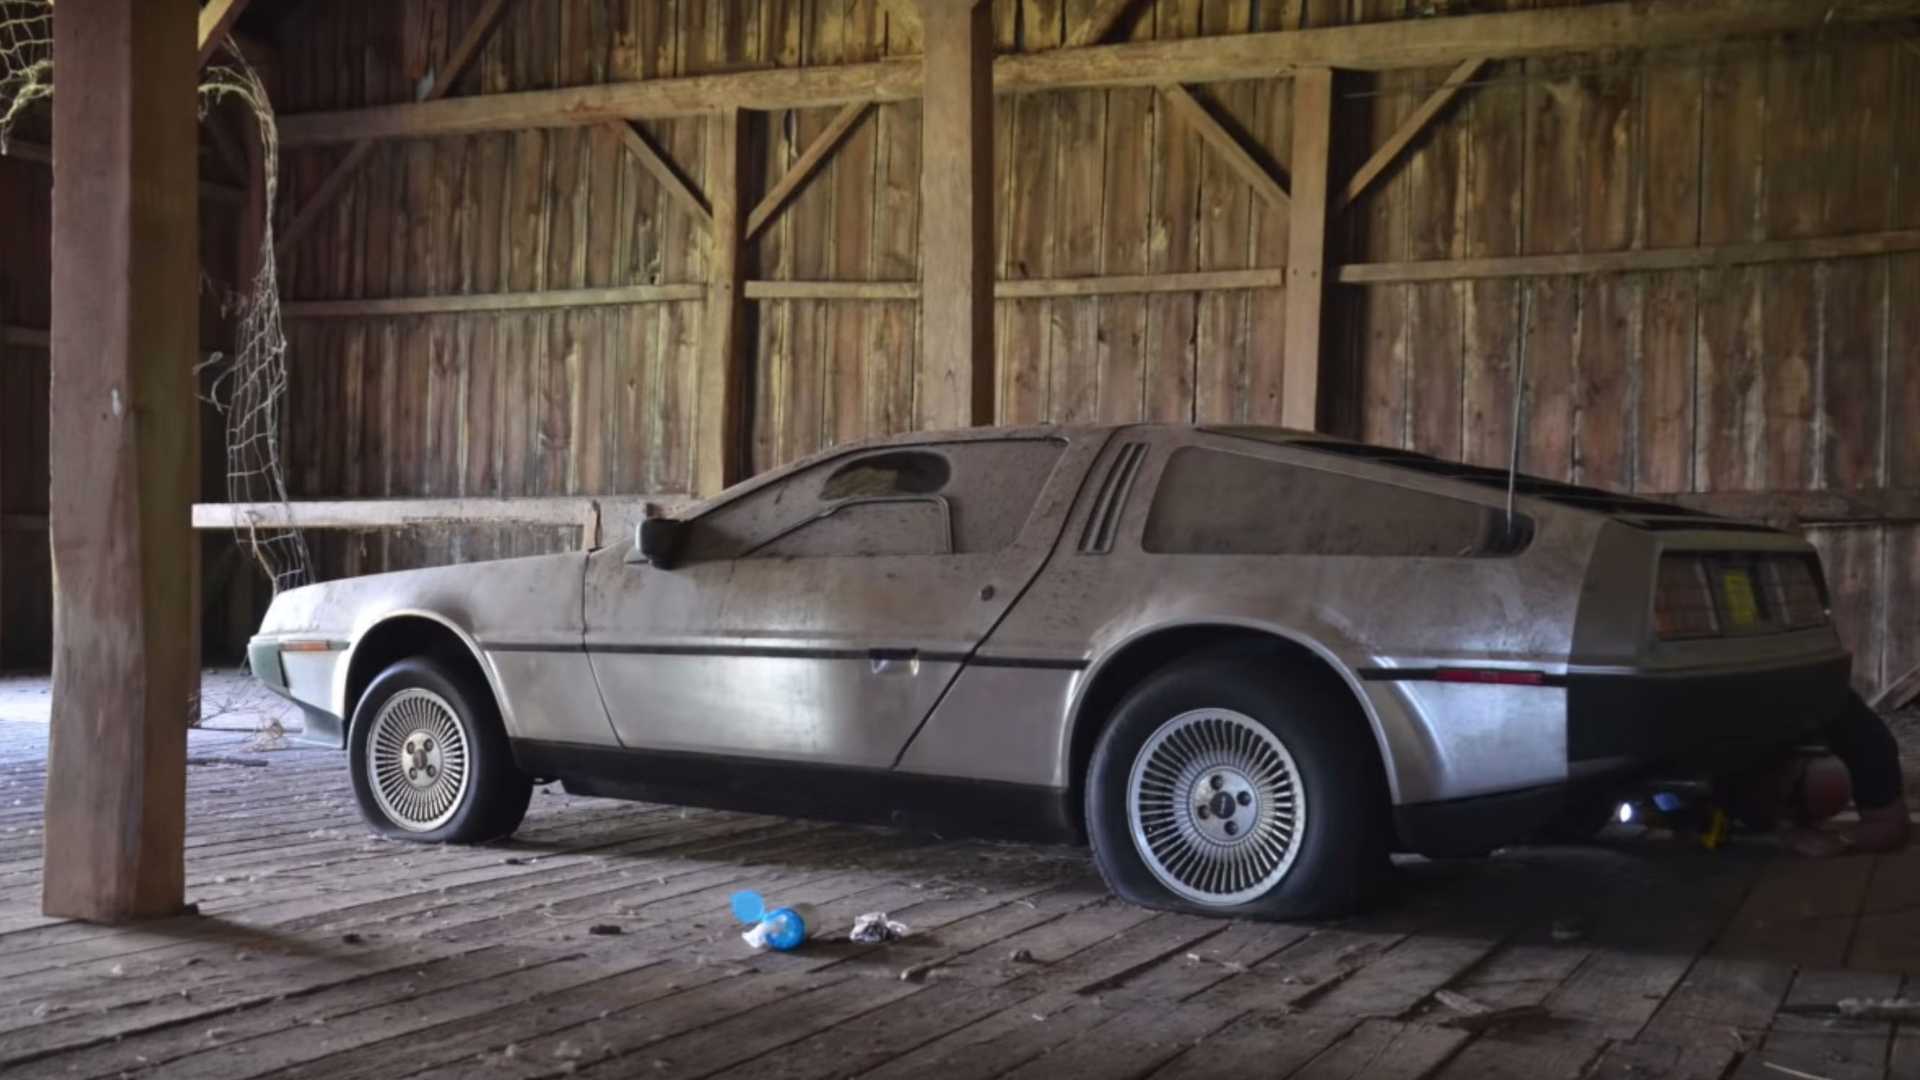 Яркий авто из культового фильма 30 лет простоял заброшенным в сарае